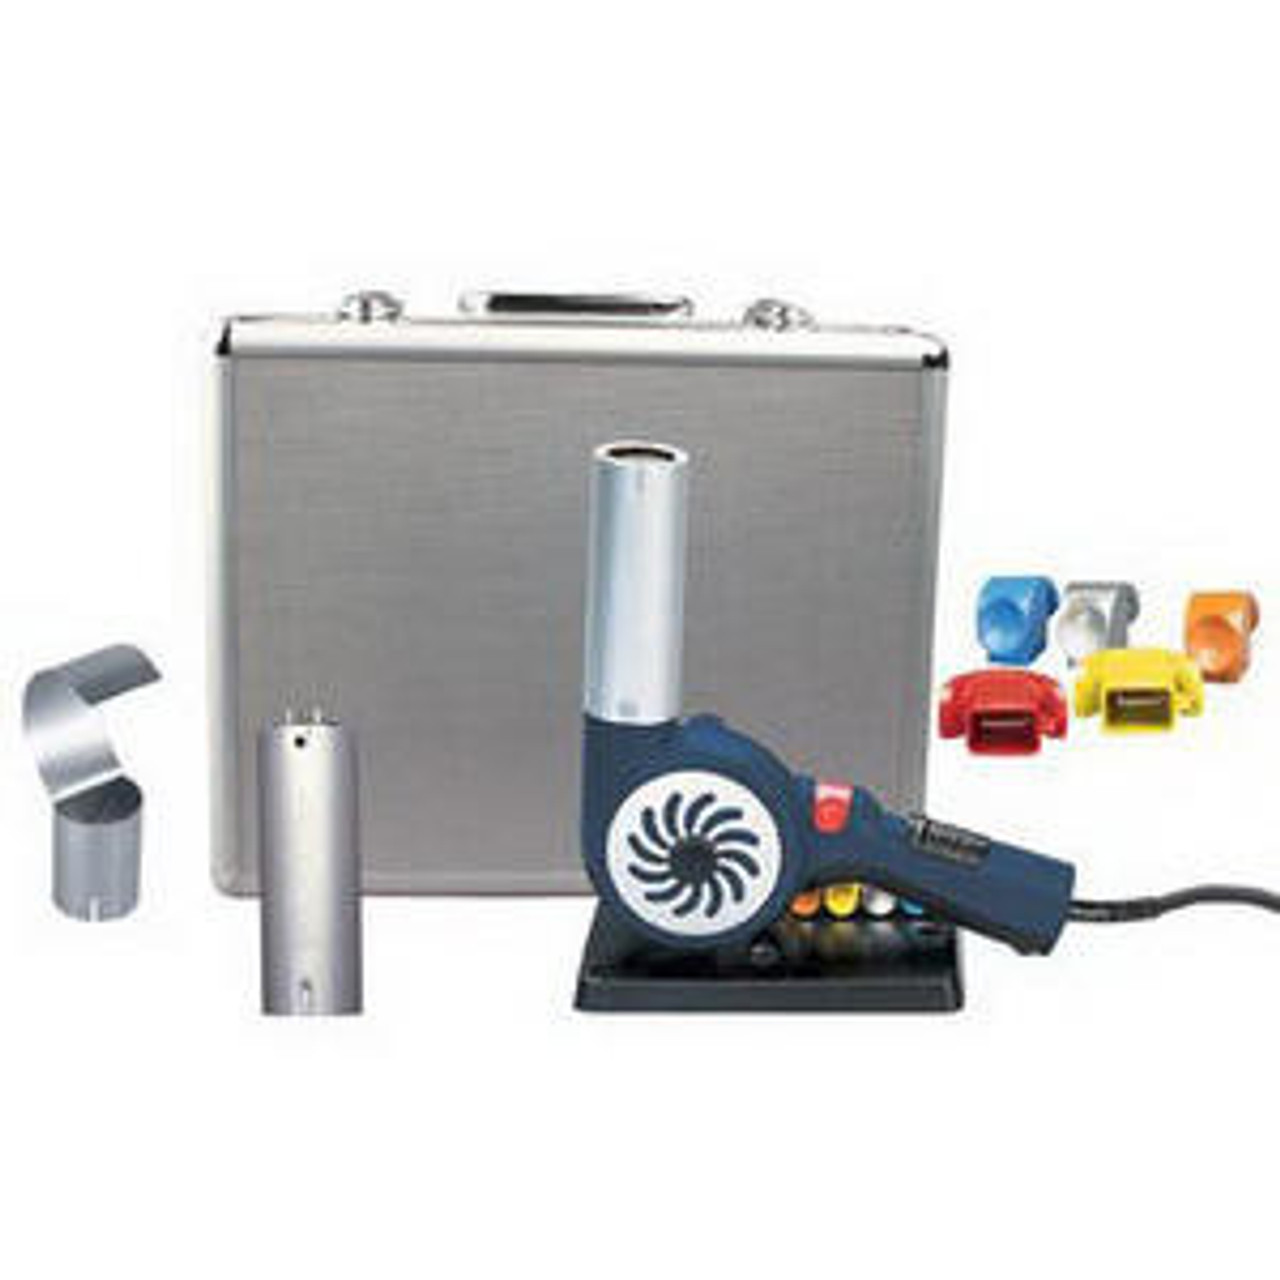 Steinel 34759 HB 1750 Turbine Heat Blower Kit